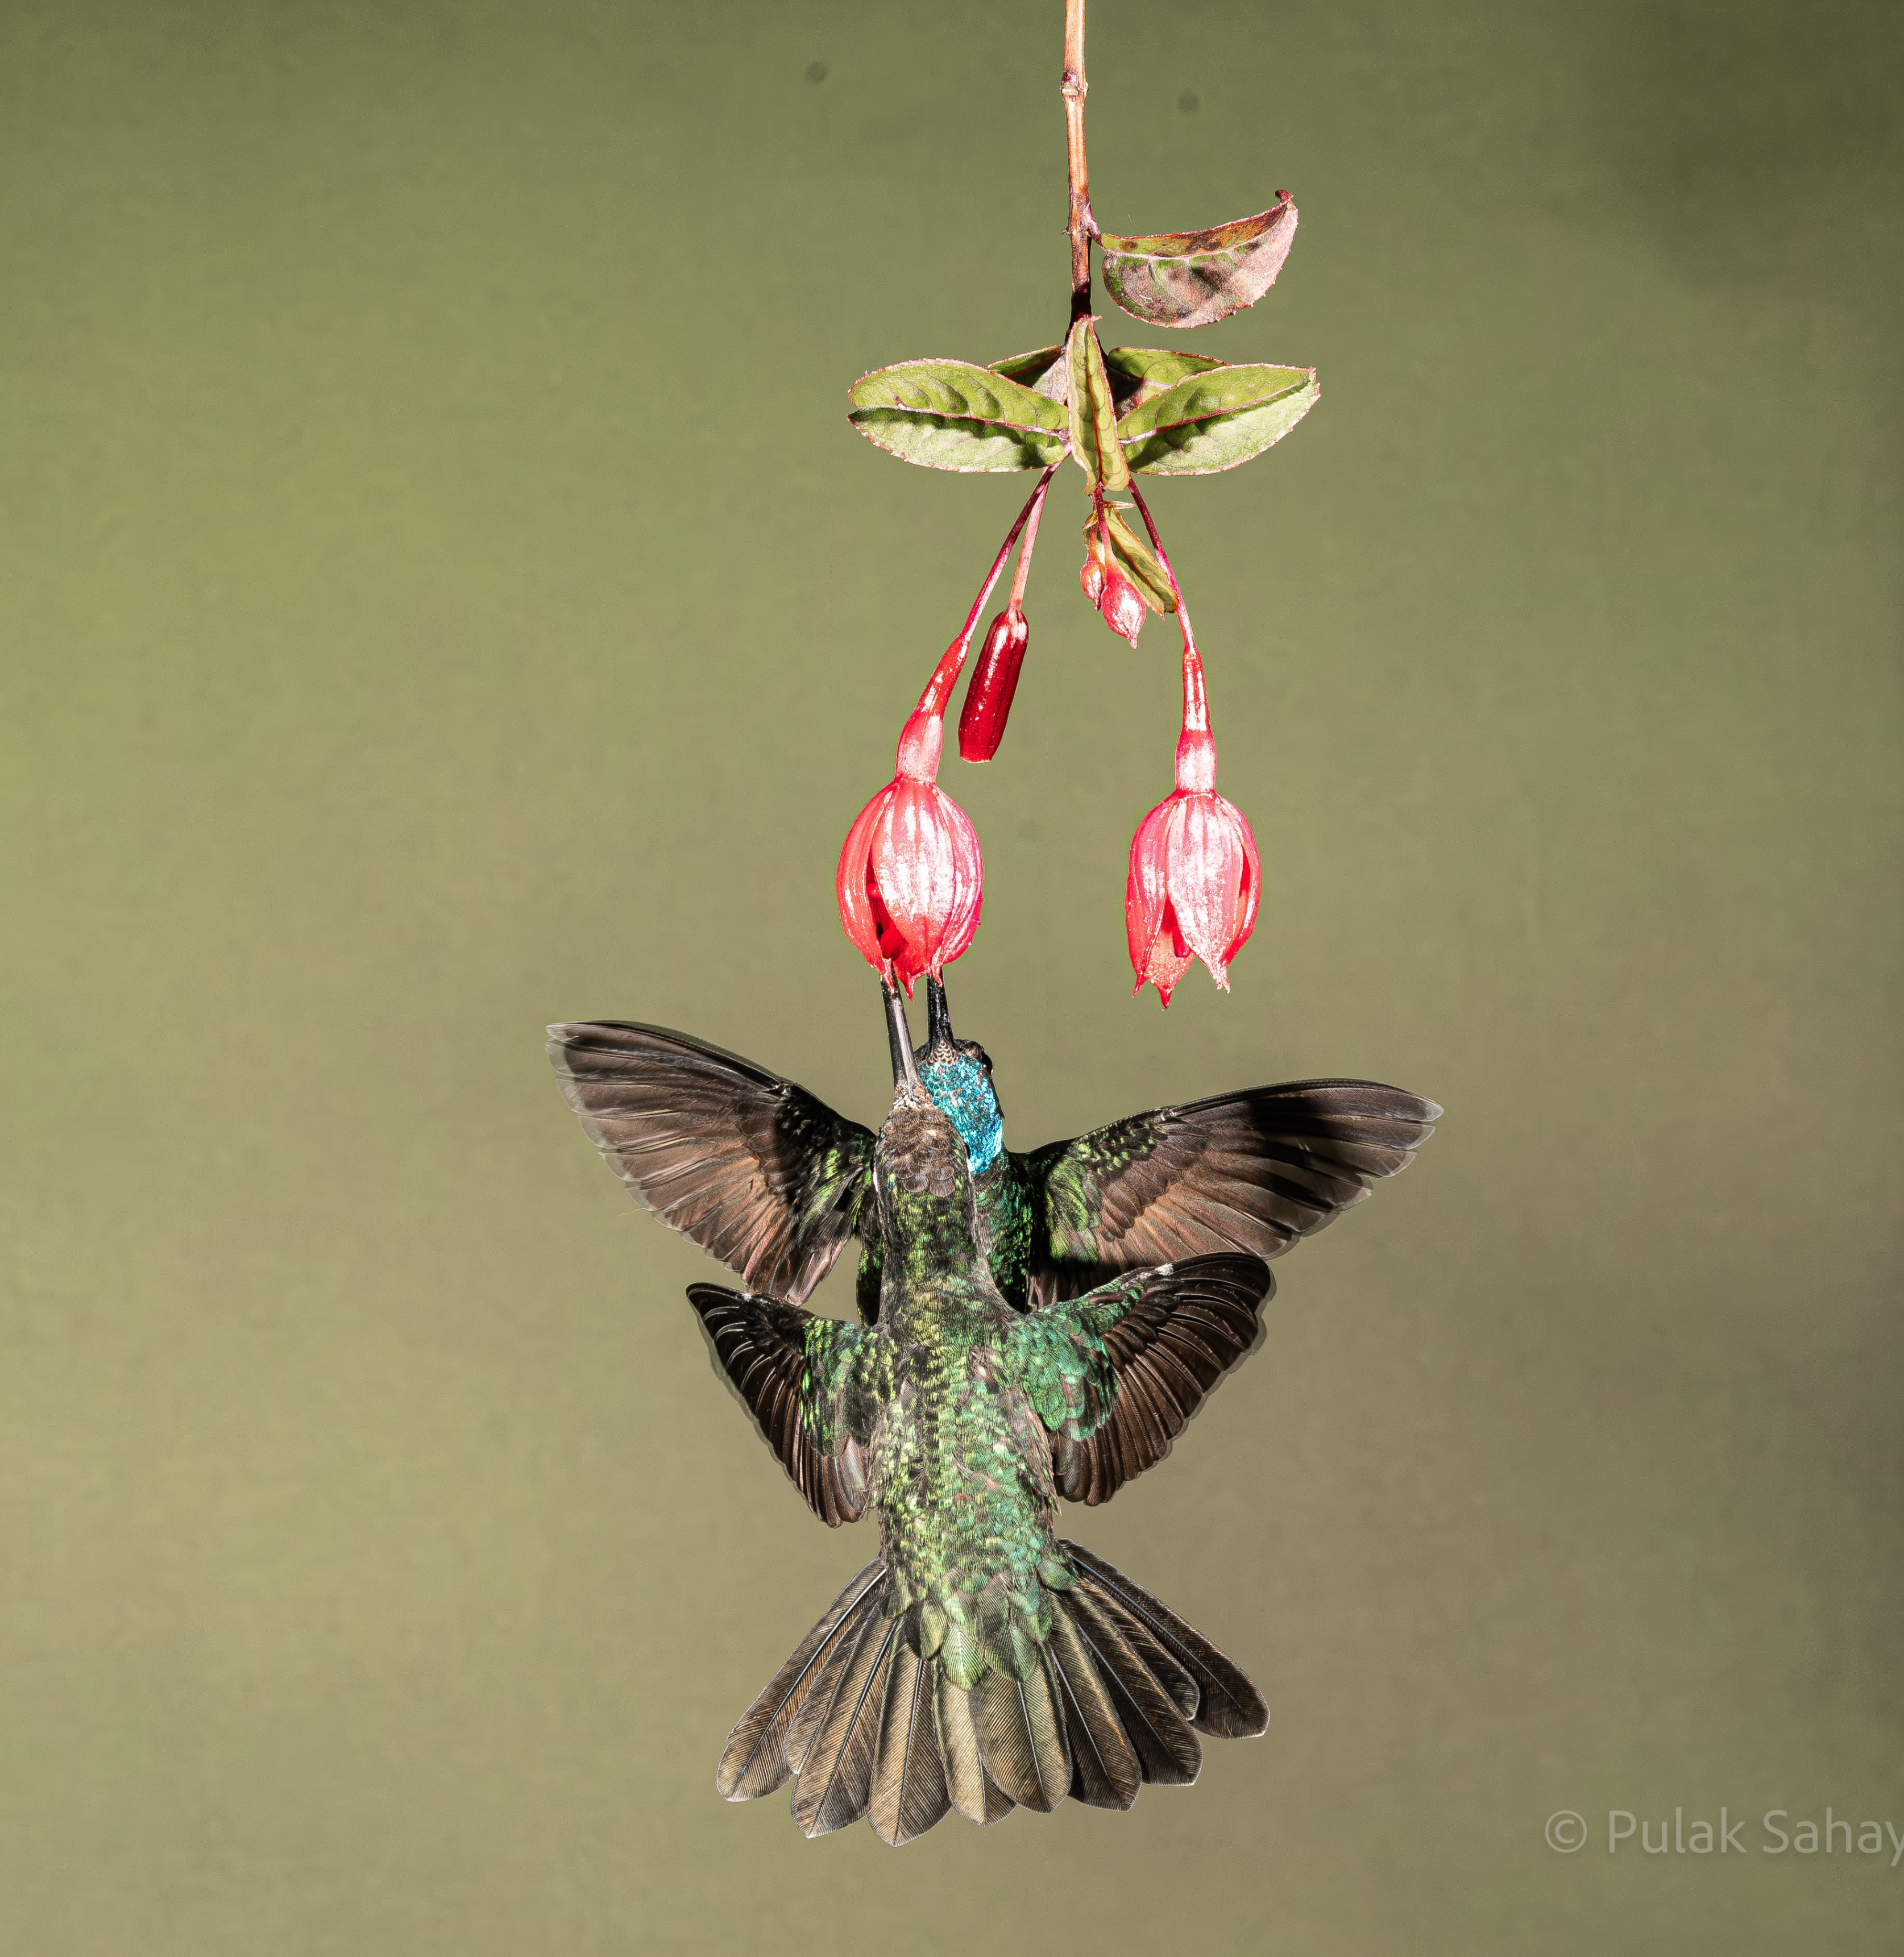 Hummingbirds sharing a flower